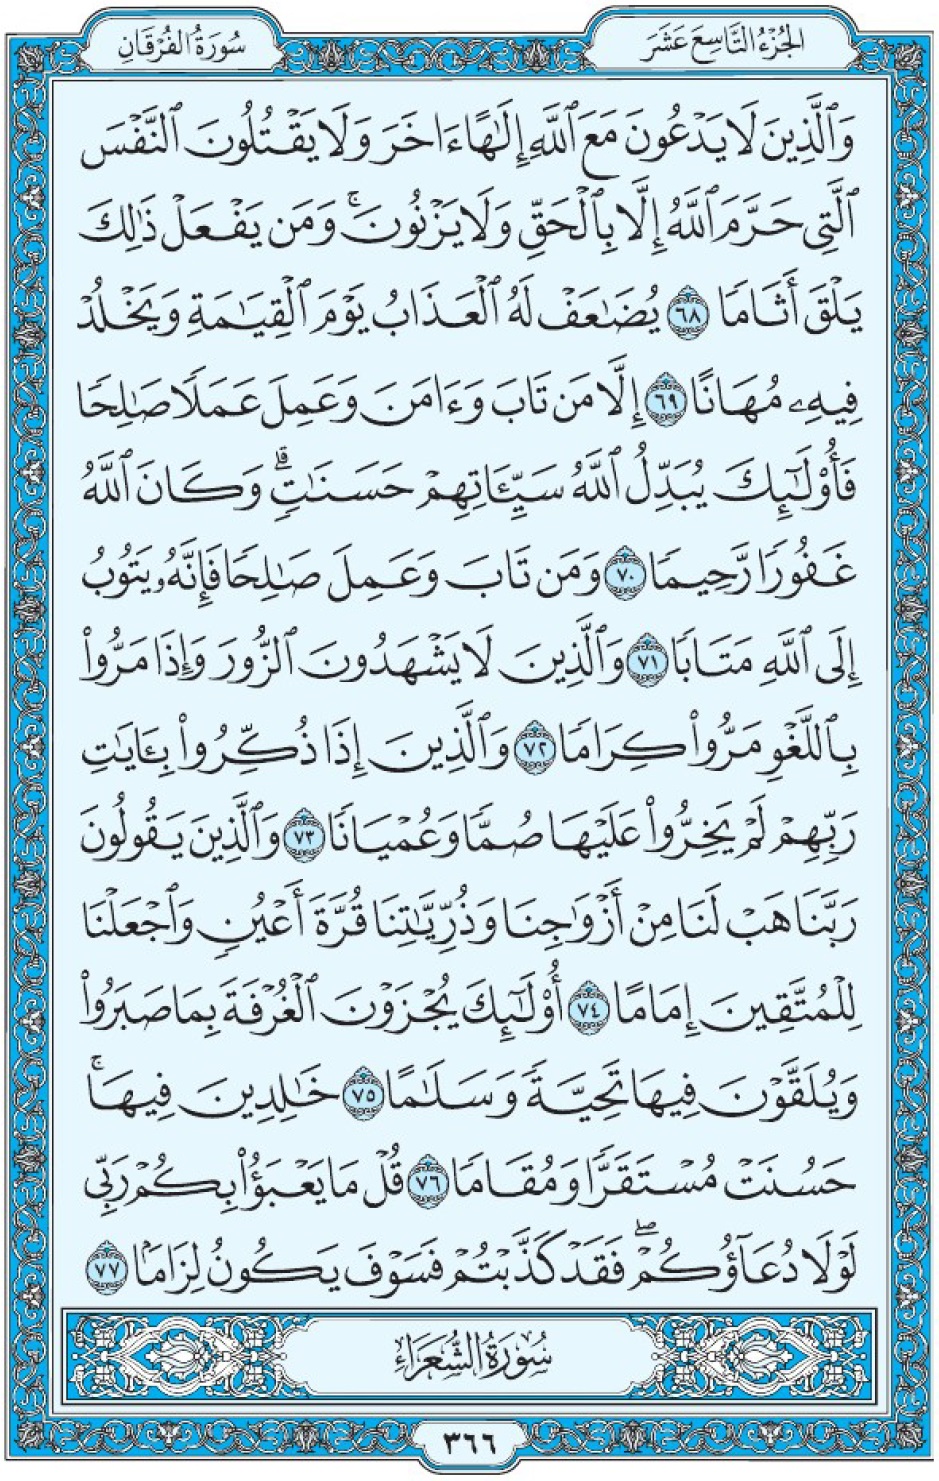 Коран Мединский мусхаф страница 366, Аль-Фуркан, аят 68-77